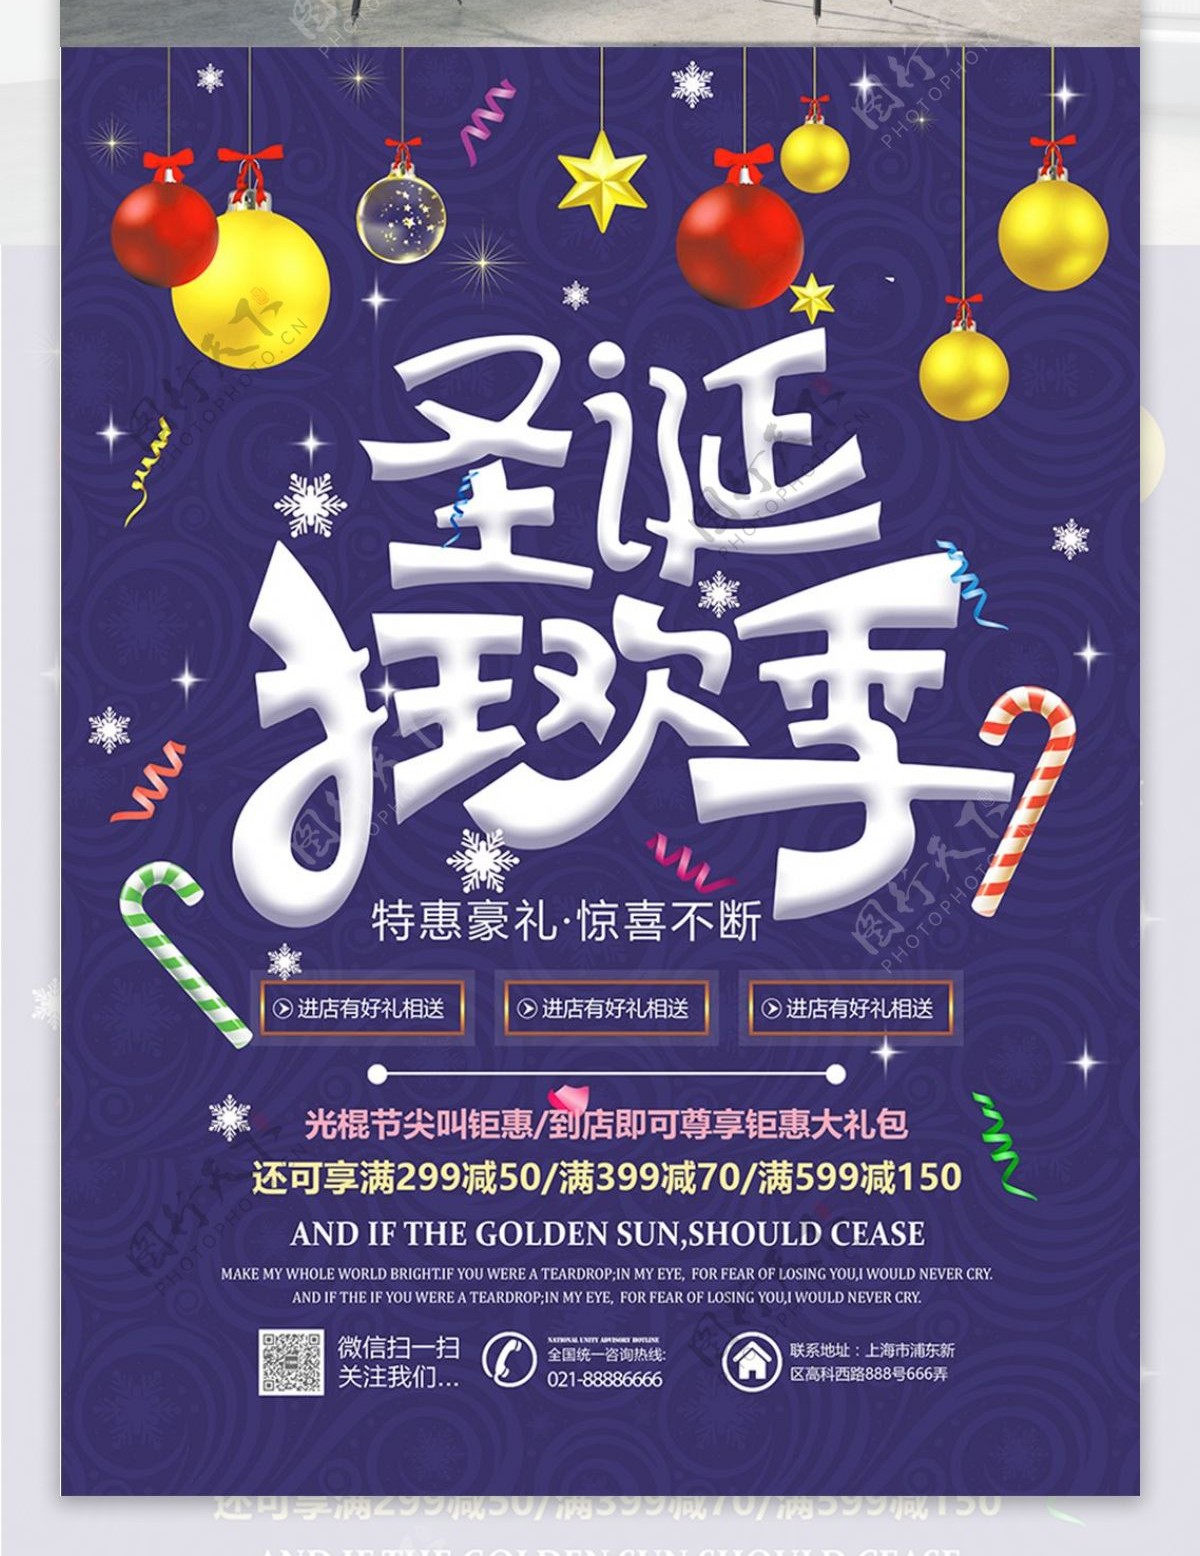 紫蓝色圣诞狂欢季活动促销宣传海报设计